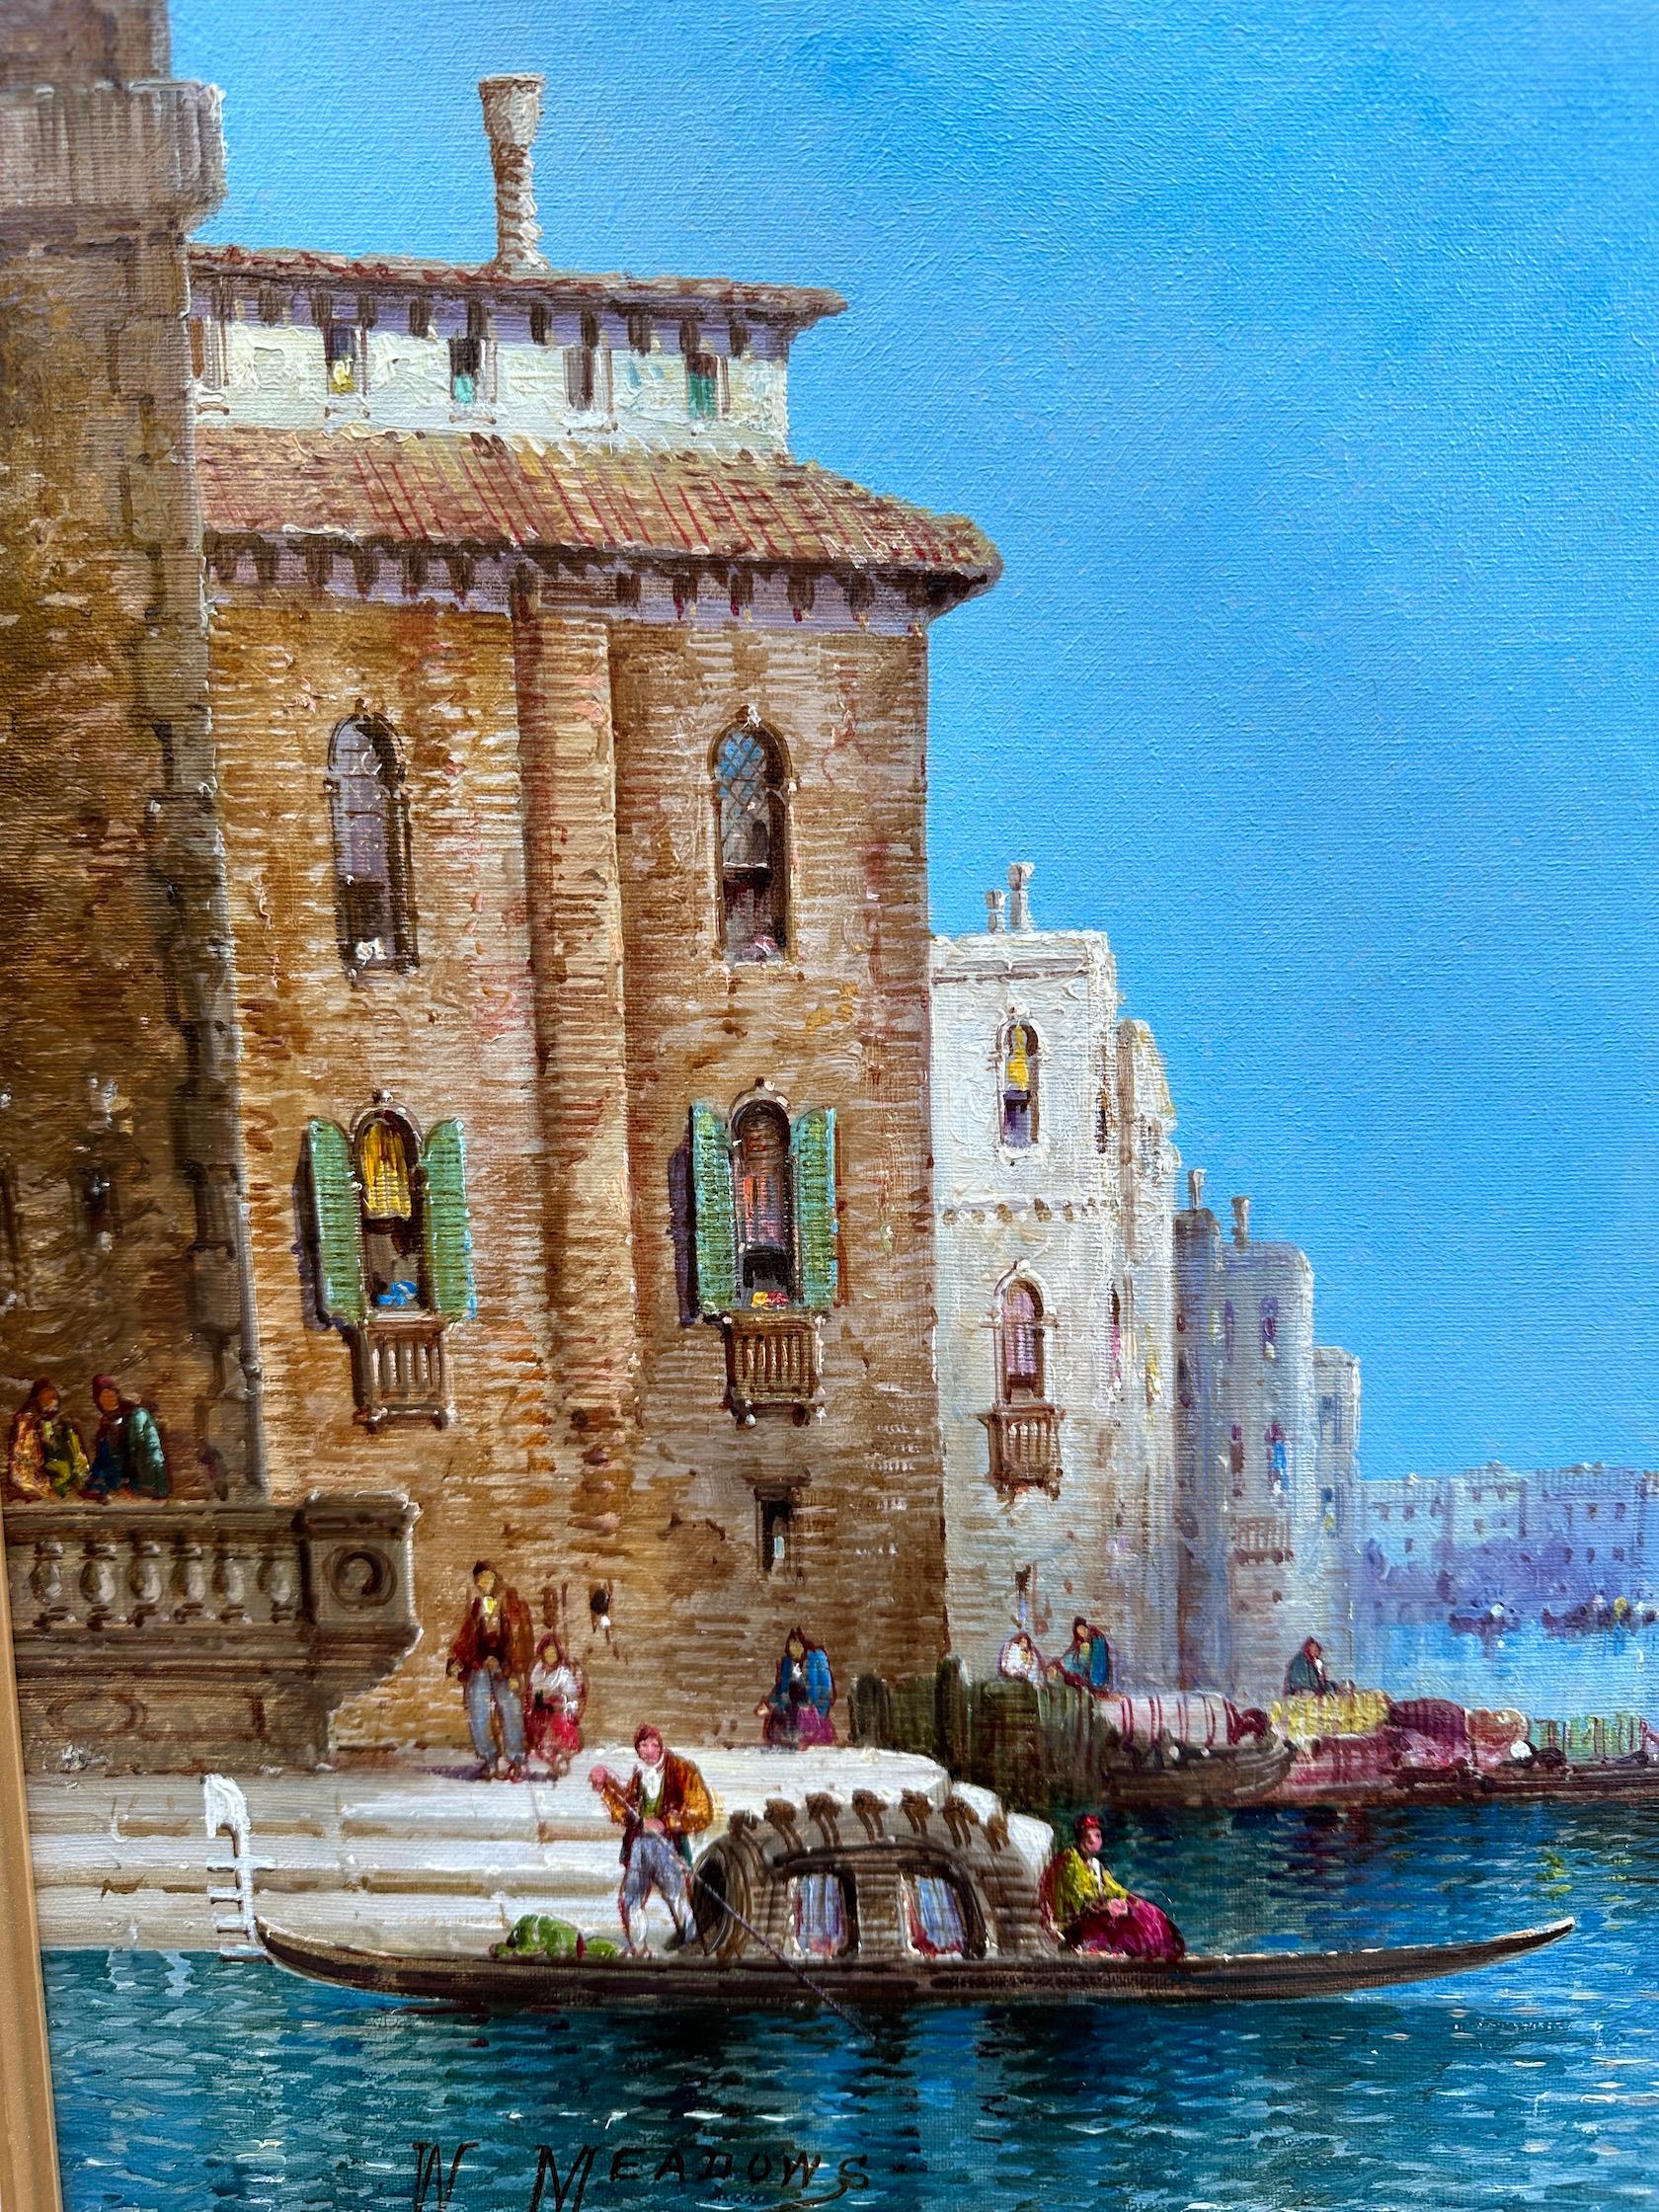 Ansicht des Canal Grande in Venedig von einem der bekanntesten Landschafts- und Venedigmaler Englands.

Dieses Beispiel ist ein sehr gut gemaltes Stück und eine großartige Komposition. 

Es ist in einen Rahmen mit englischem klassischem Laufmuster